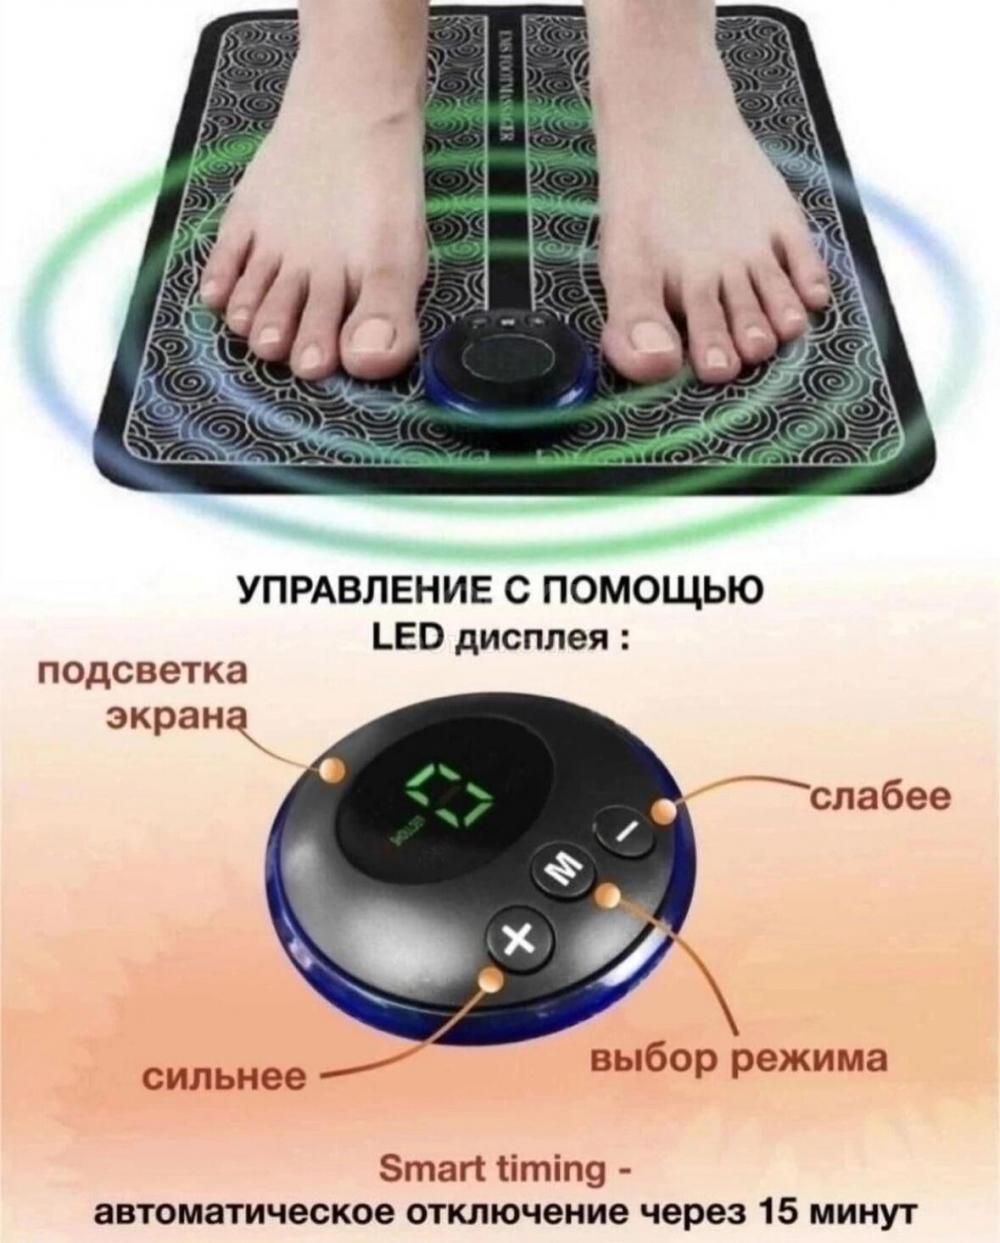 Электромассаж ног — эффективная методика лечения и профилактики болезней, связанных с дисфункцией или усталостью ног.